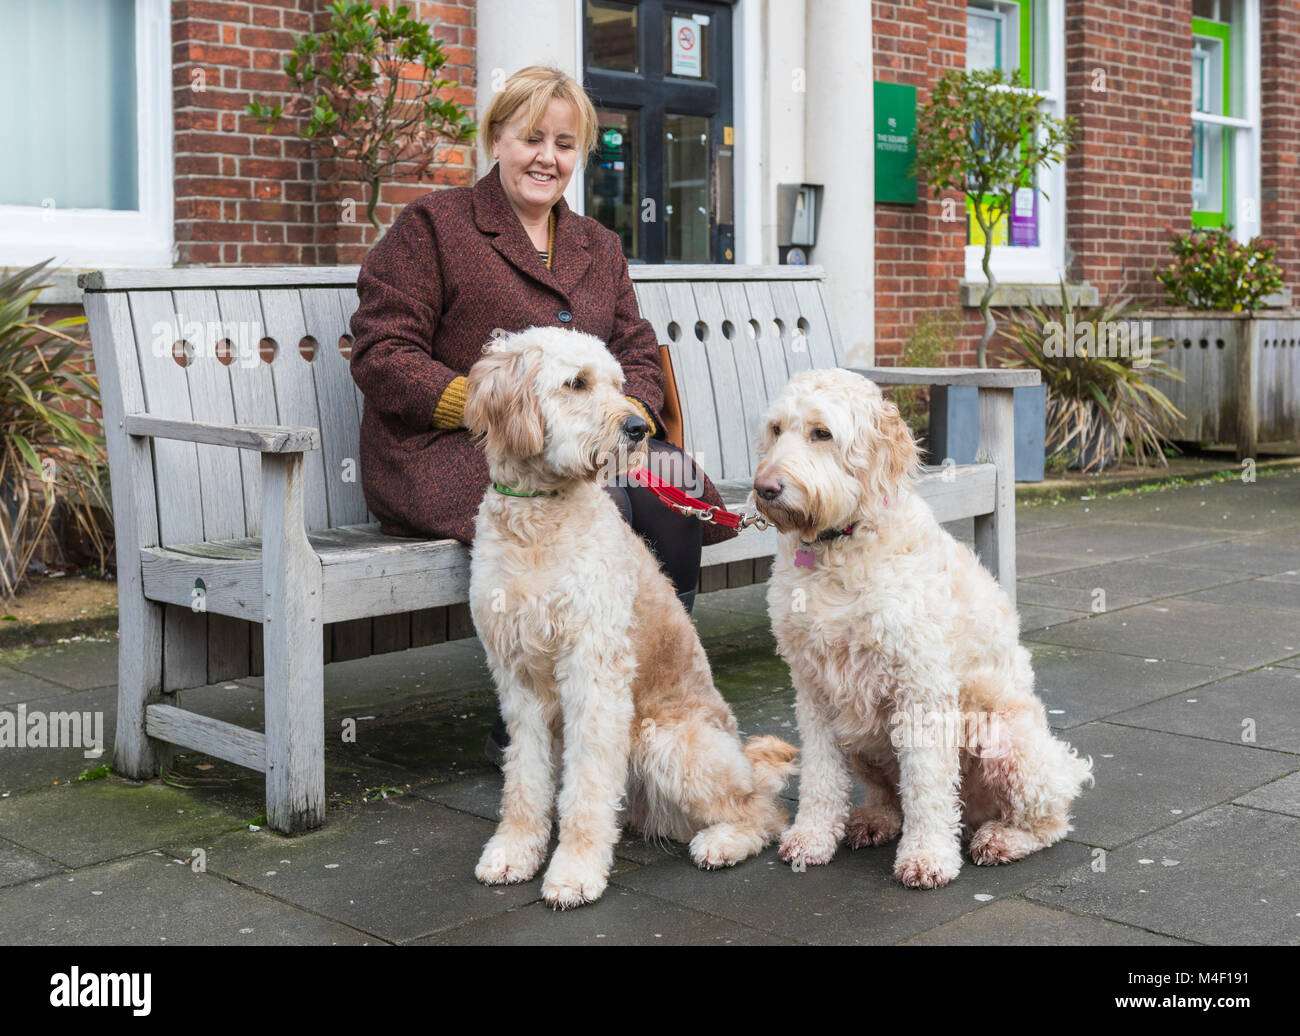 Paar große weiße Hunde, möglicherweise Goldendoodle Hunde, Sitzen mit einer Frau auf eine Bank in Großbritannien. Stockfoto